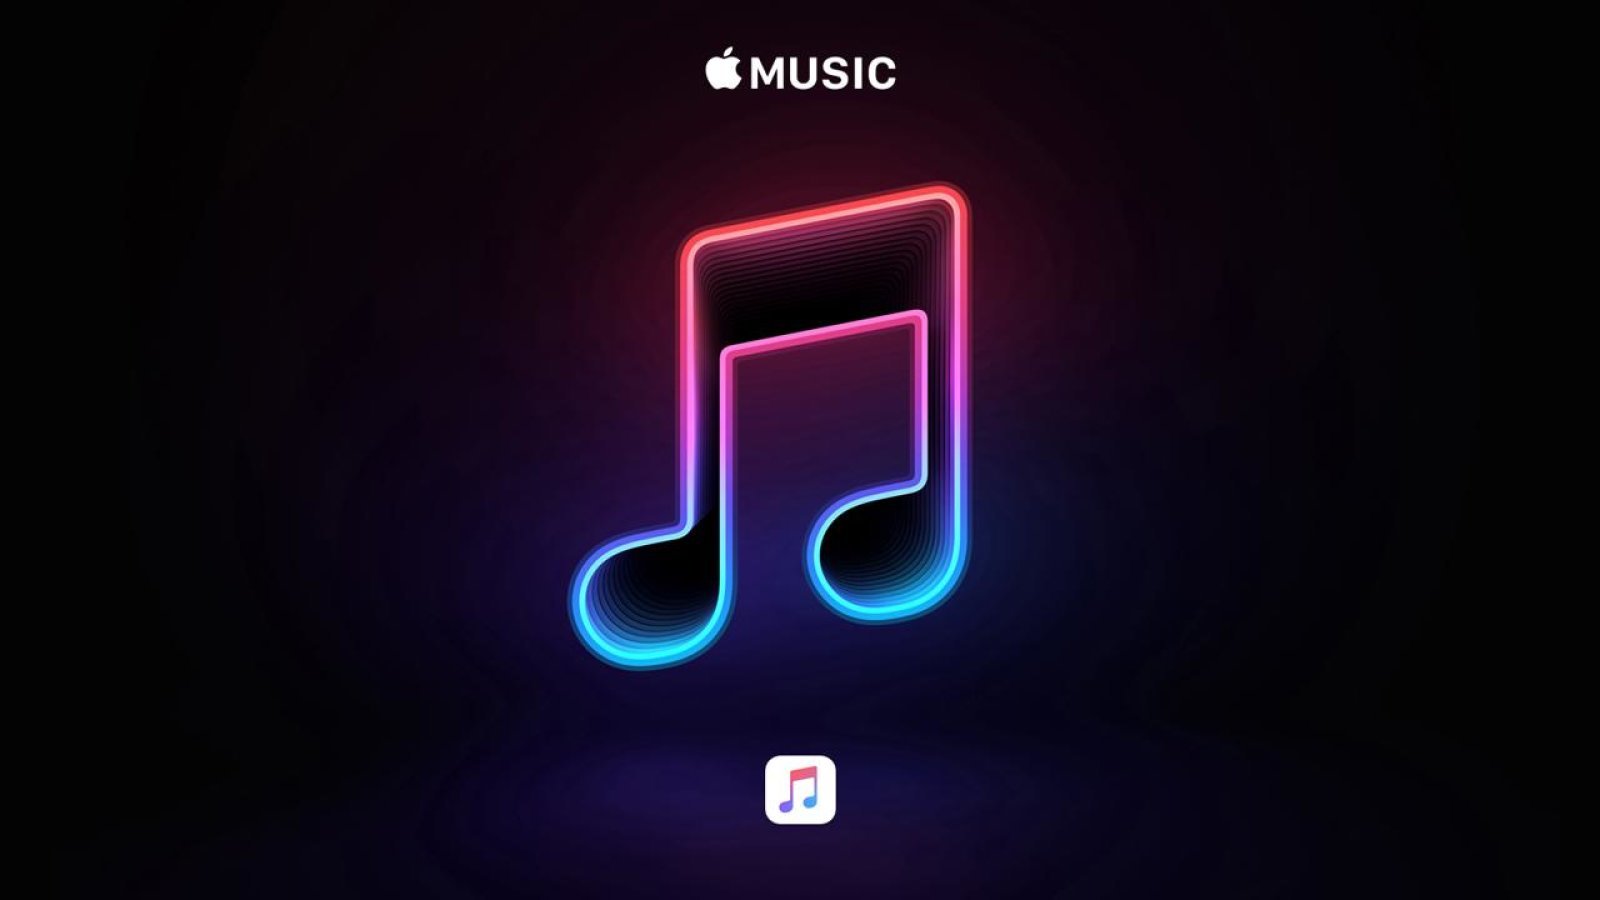 Nhận 5 tháng miễn phí Apple Music khi đăng ký qua Shazam